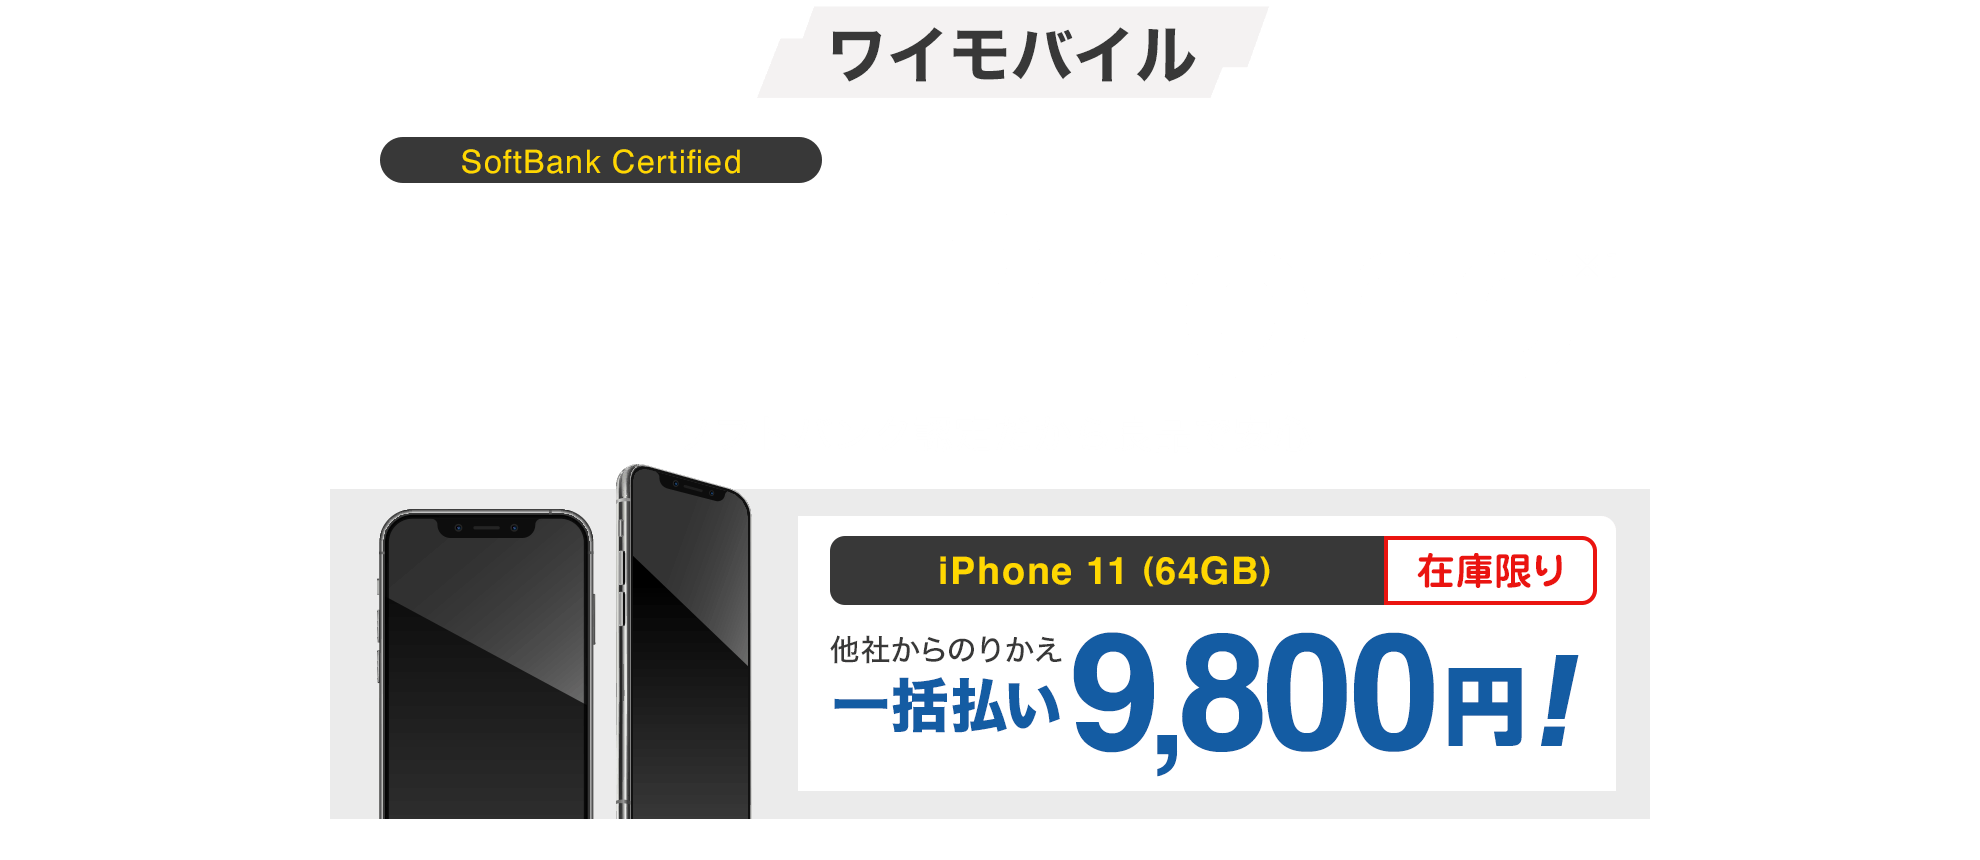 ワイモバイル SoftBank Certified ソフトバンク認定中古品iPhone※1 ソフトバンク認定だから良品で安心 iPhone 8（64GB）在庫限り 他社からのりかえ一括払い1円〜 ※1 本製品はApple認定整備済製品ではありません。